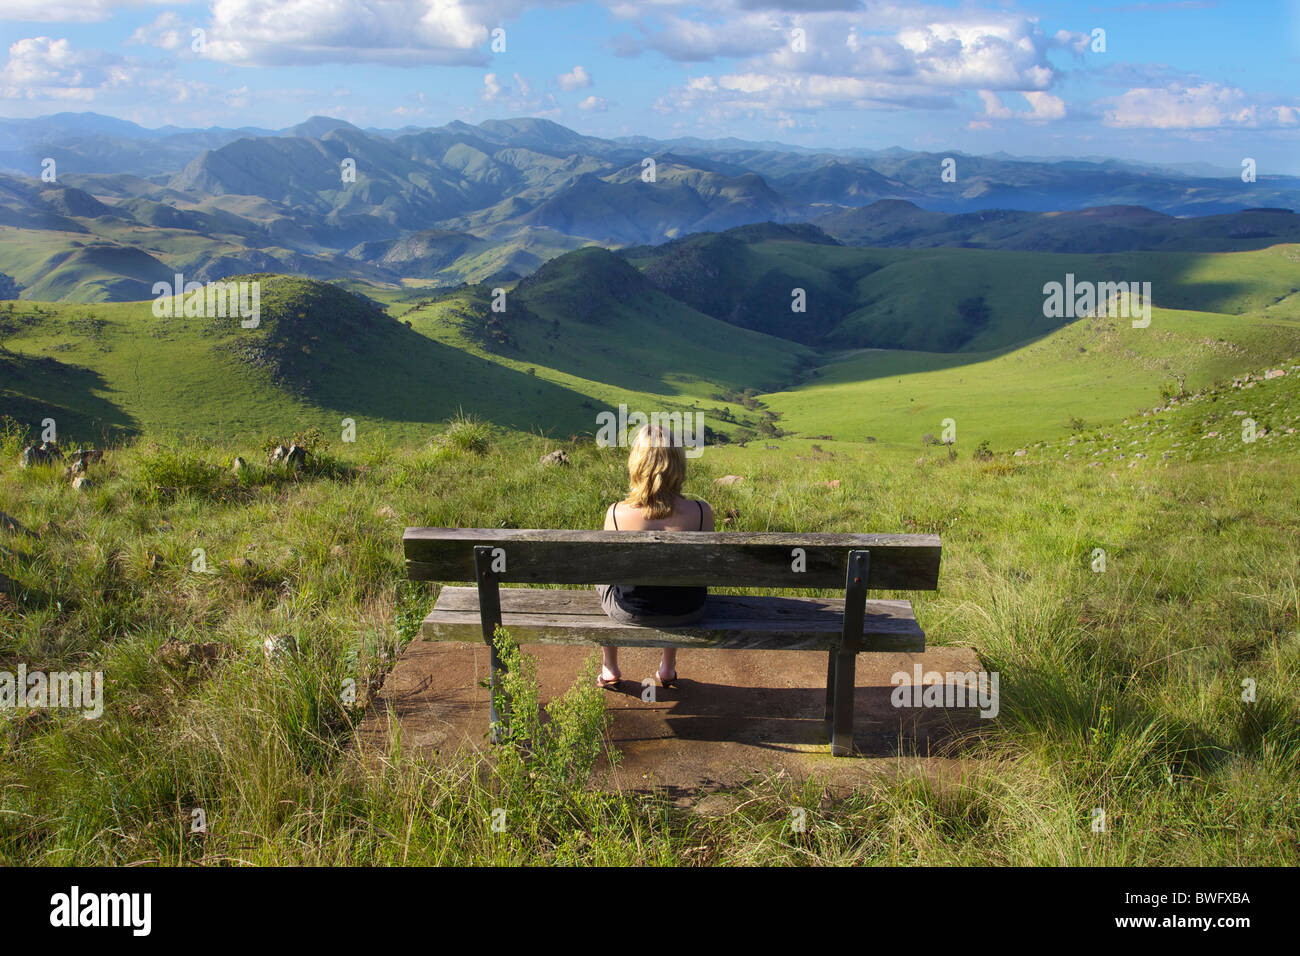 Mujer mirando su opinión, reserva natural Malolotja, Suazilandia Foto de stock